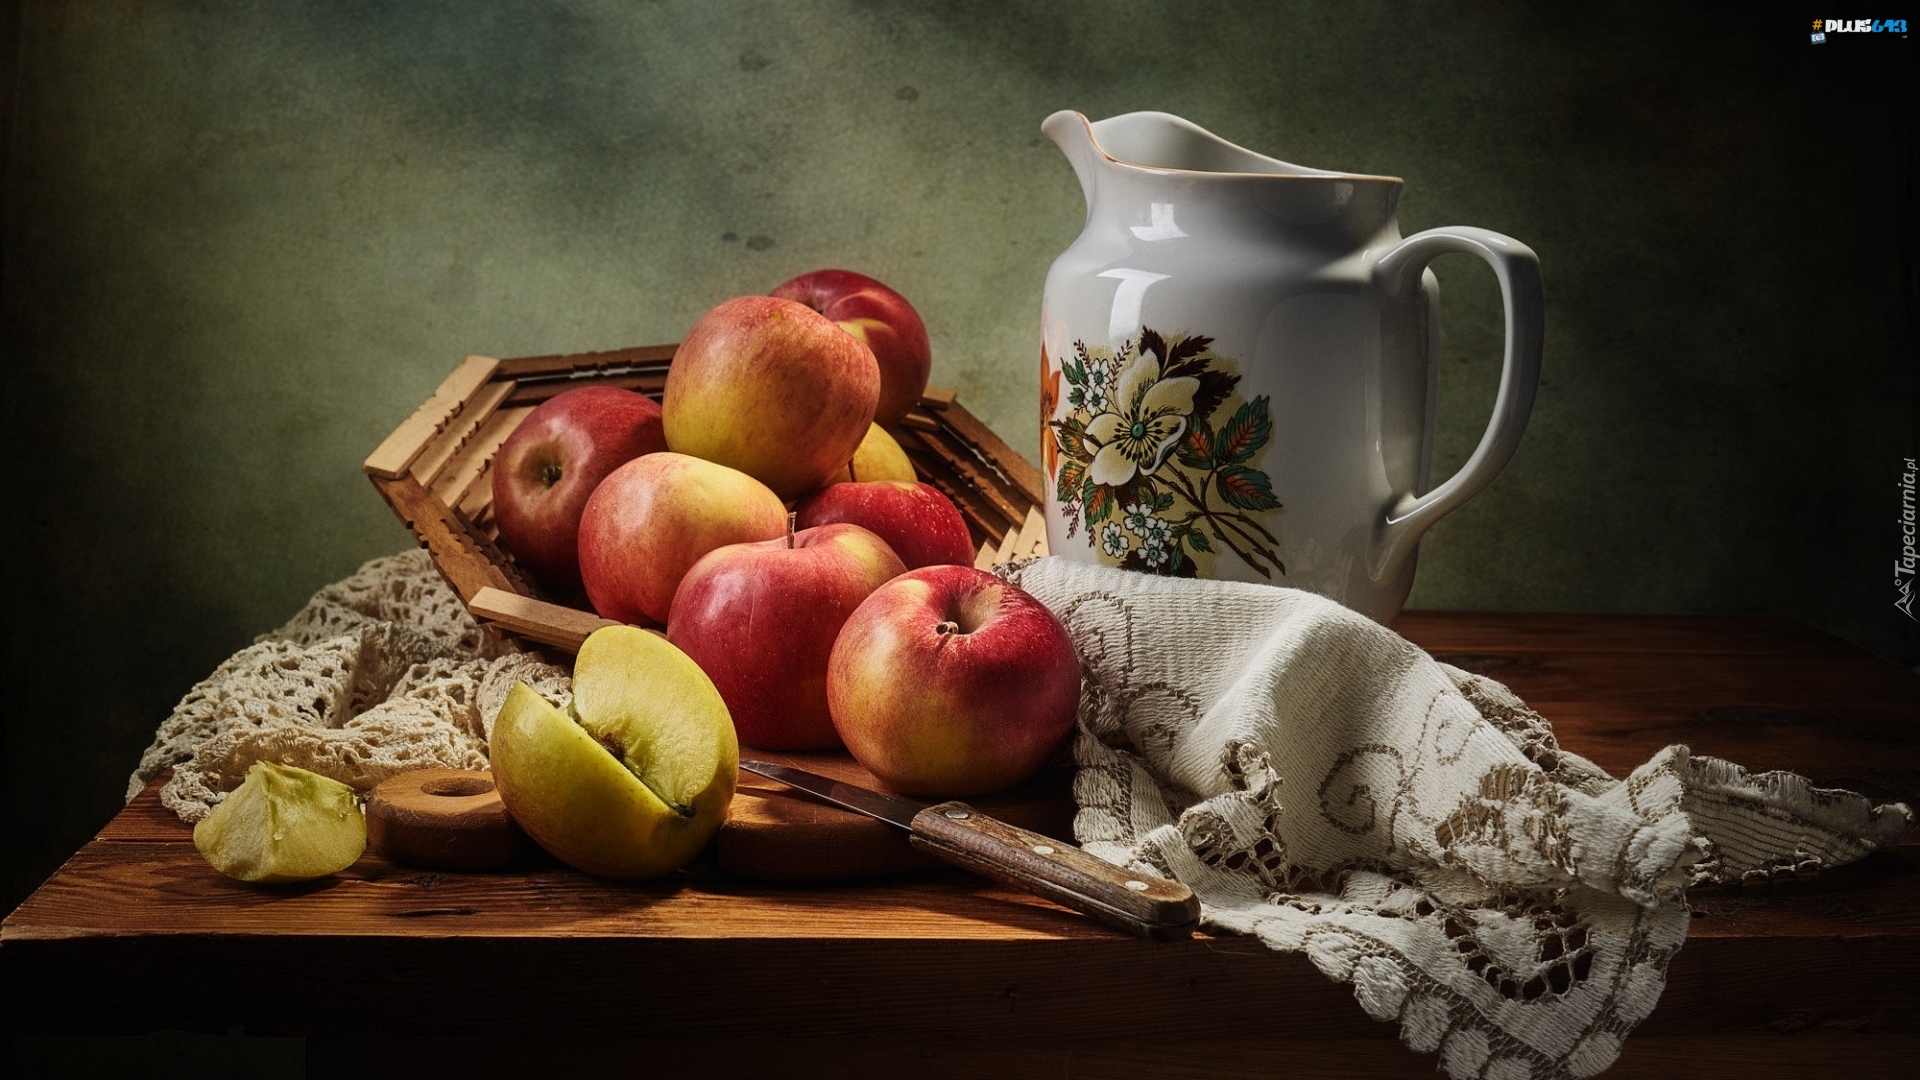 Wallpaper - Apples In A Basket, study in still art